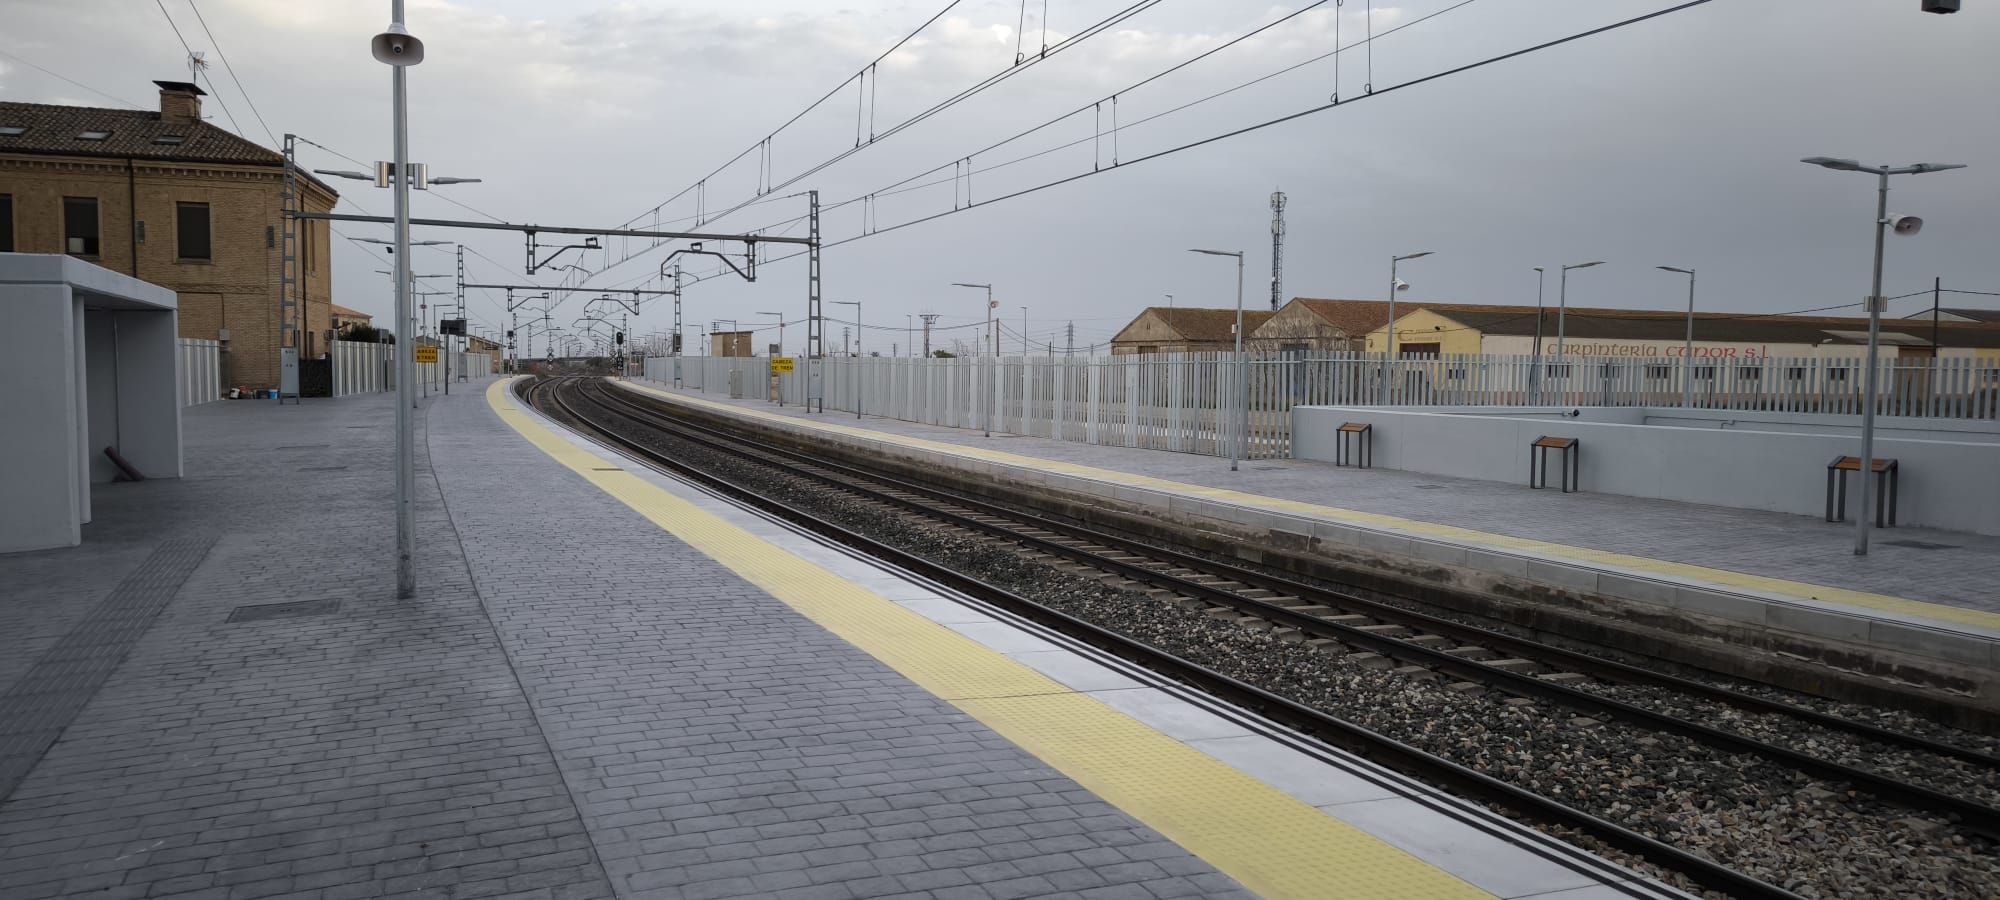 En imágenes | Las nuevas instalaciones en la estación de tren de Gallur